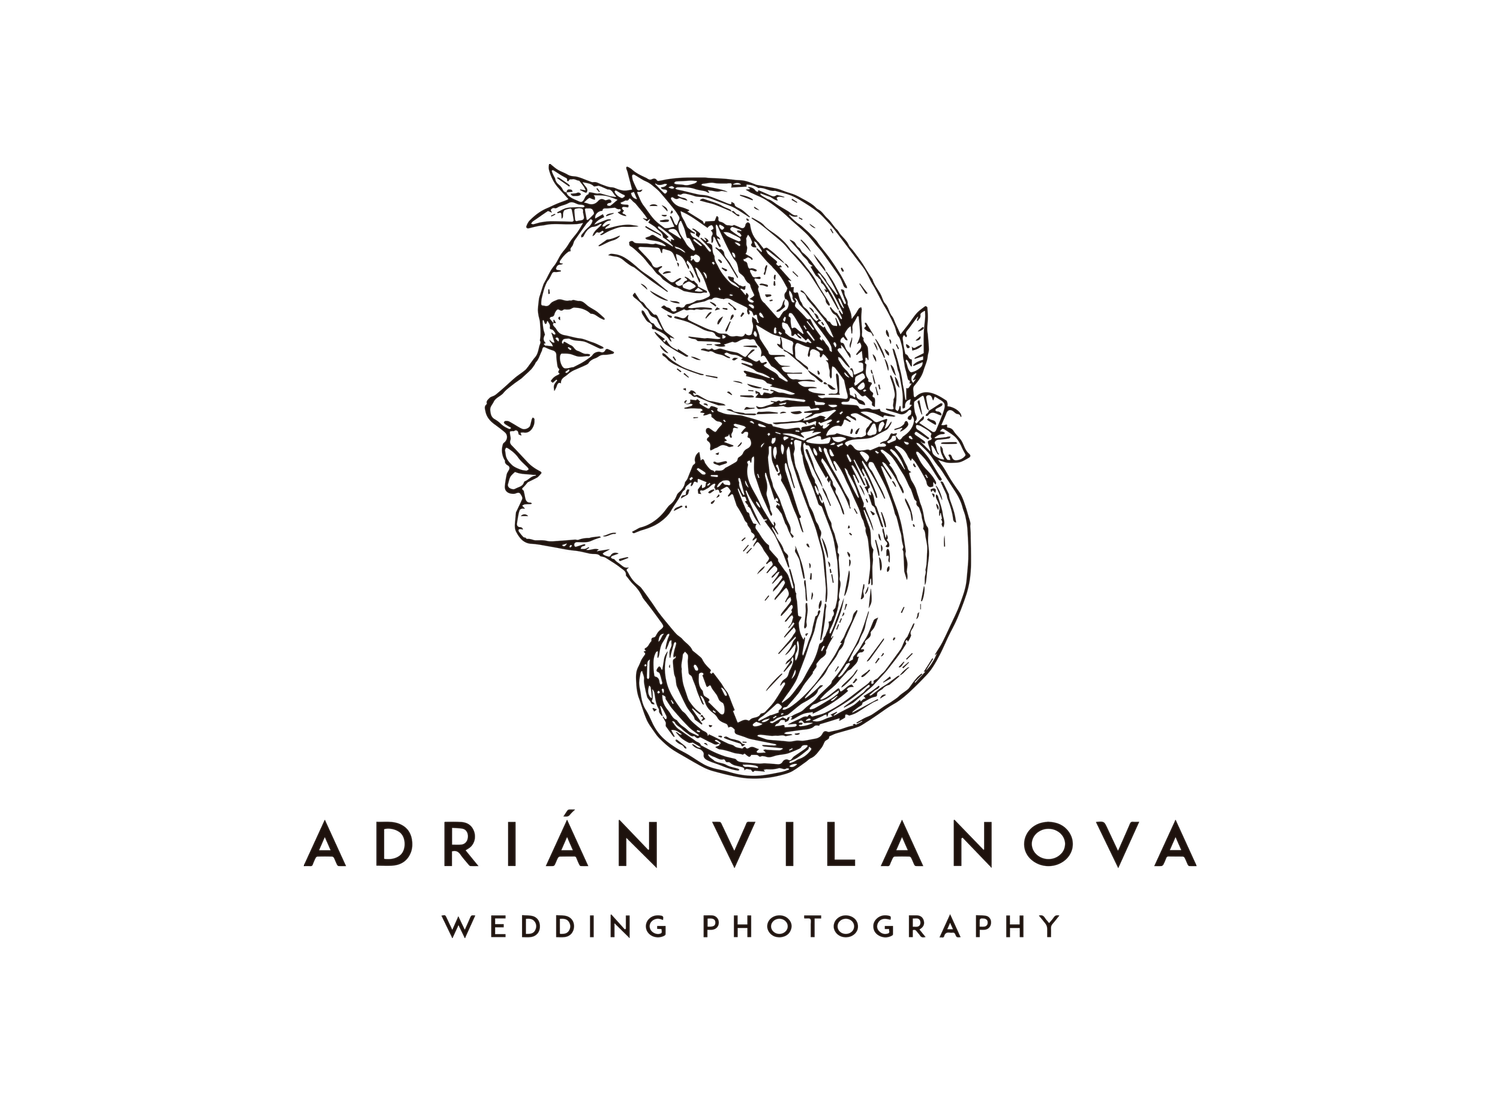 Adrian Vilanova